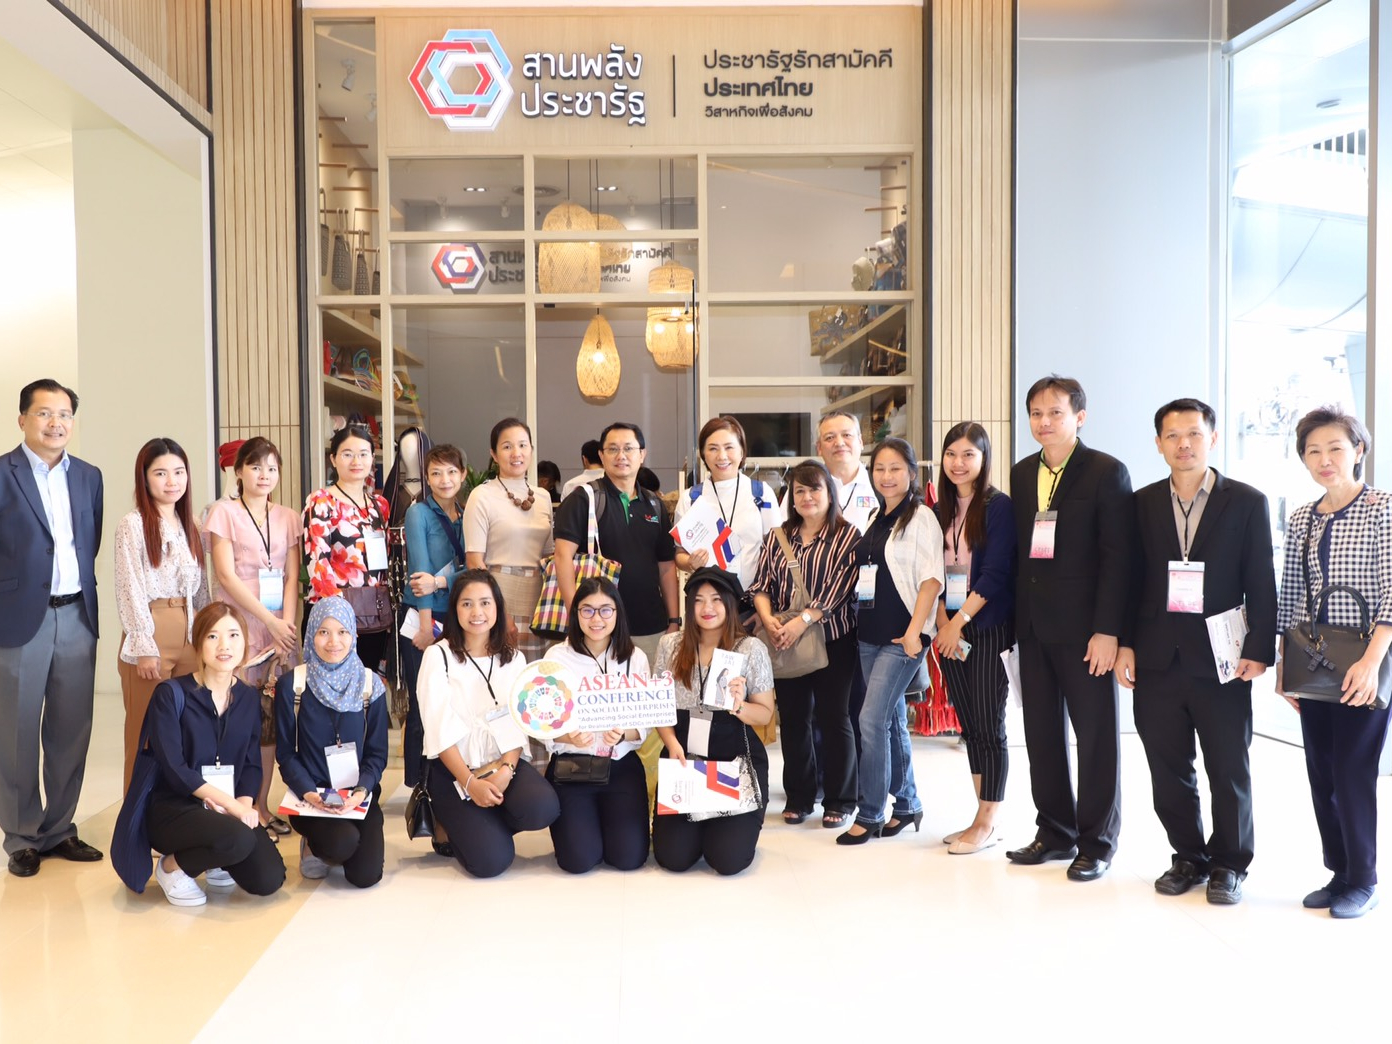 การประชุมโครงการส่งเสริมกิจการเพื่อสังคมในภูมิภาคอาเซียน (ASEAN +3 Conference on Social Enterprises)